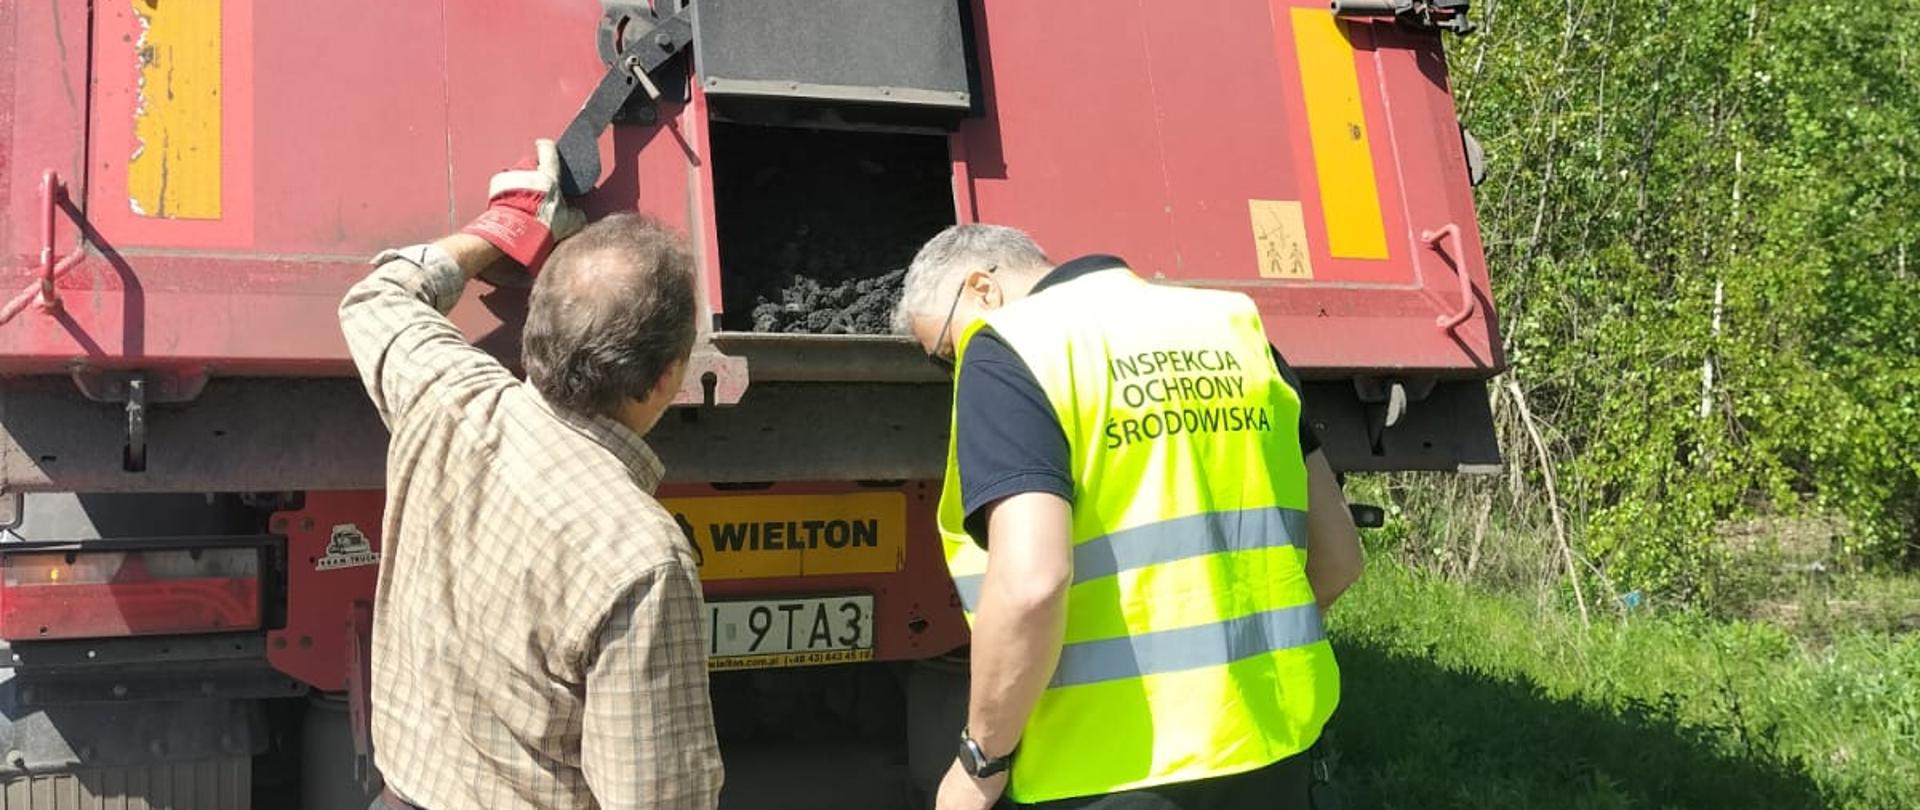 Kontrola transportu odpadów